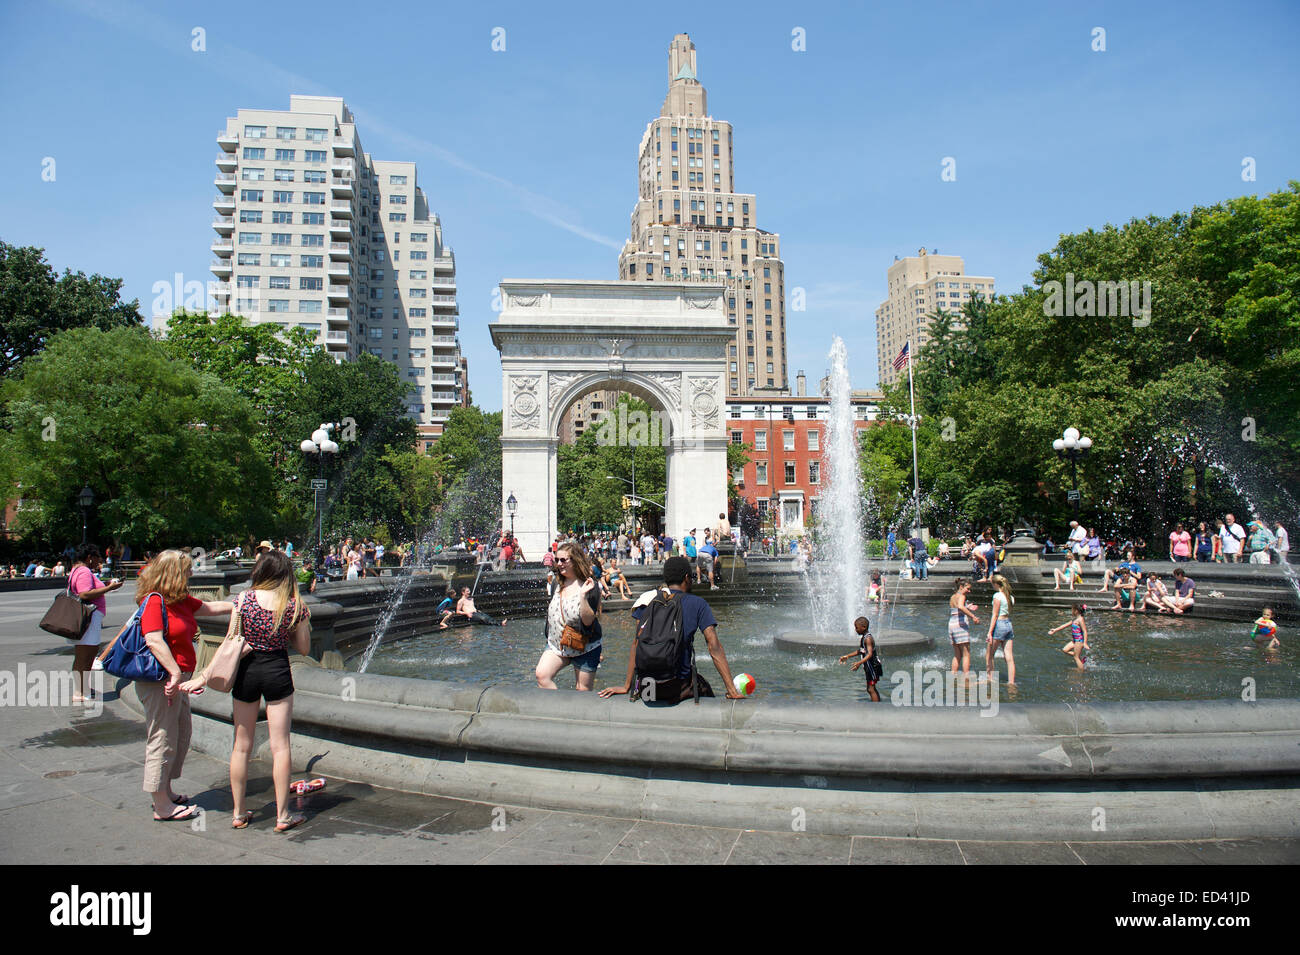 La città di NEW YORK, Stati Uniti d'America - Giugno 2014: le persone si radunano presso la fontana di Washington Square Park su un luminoso pomeriggio d'estate. Foto Stock